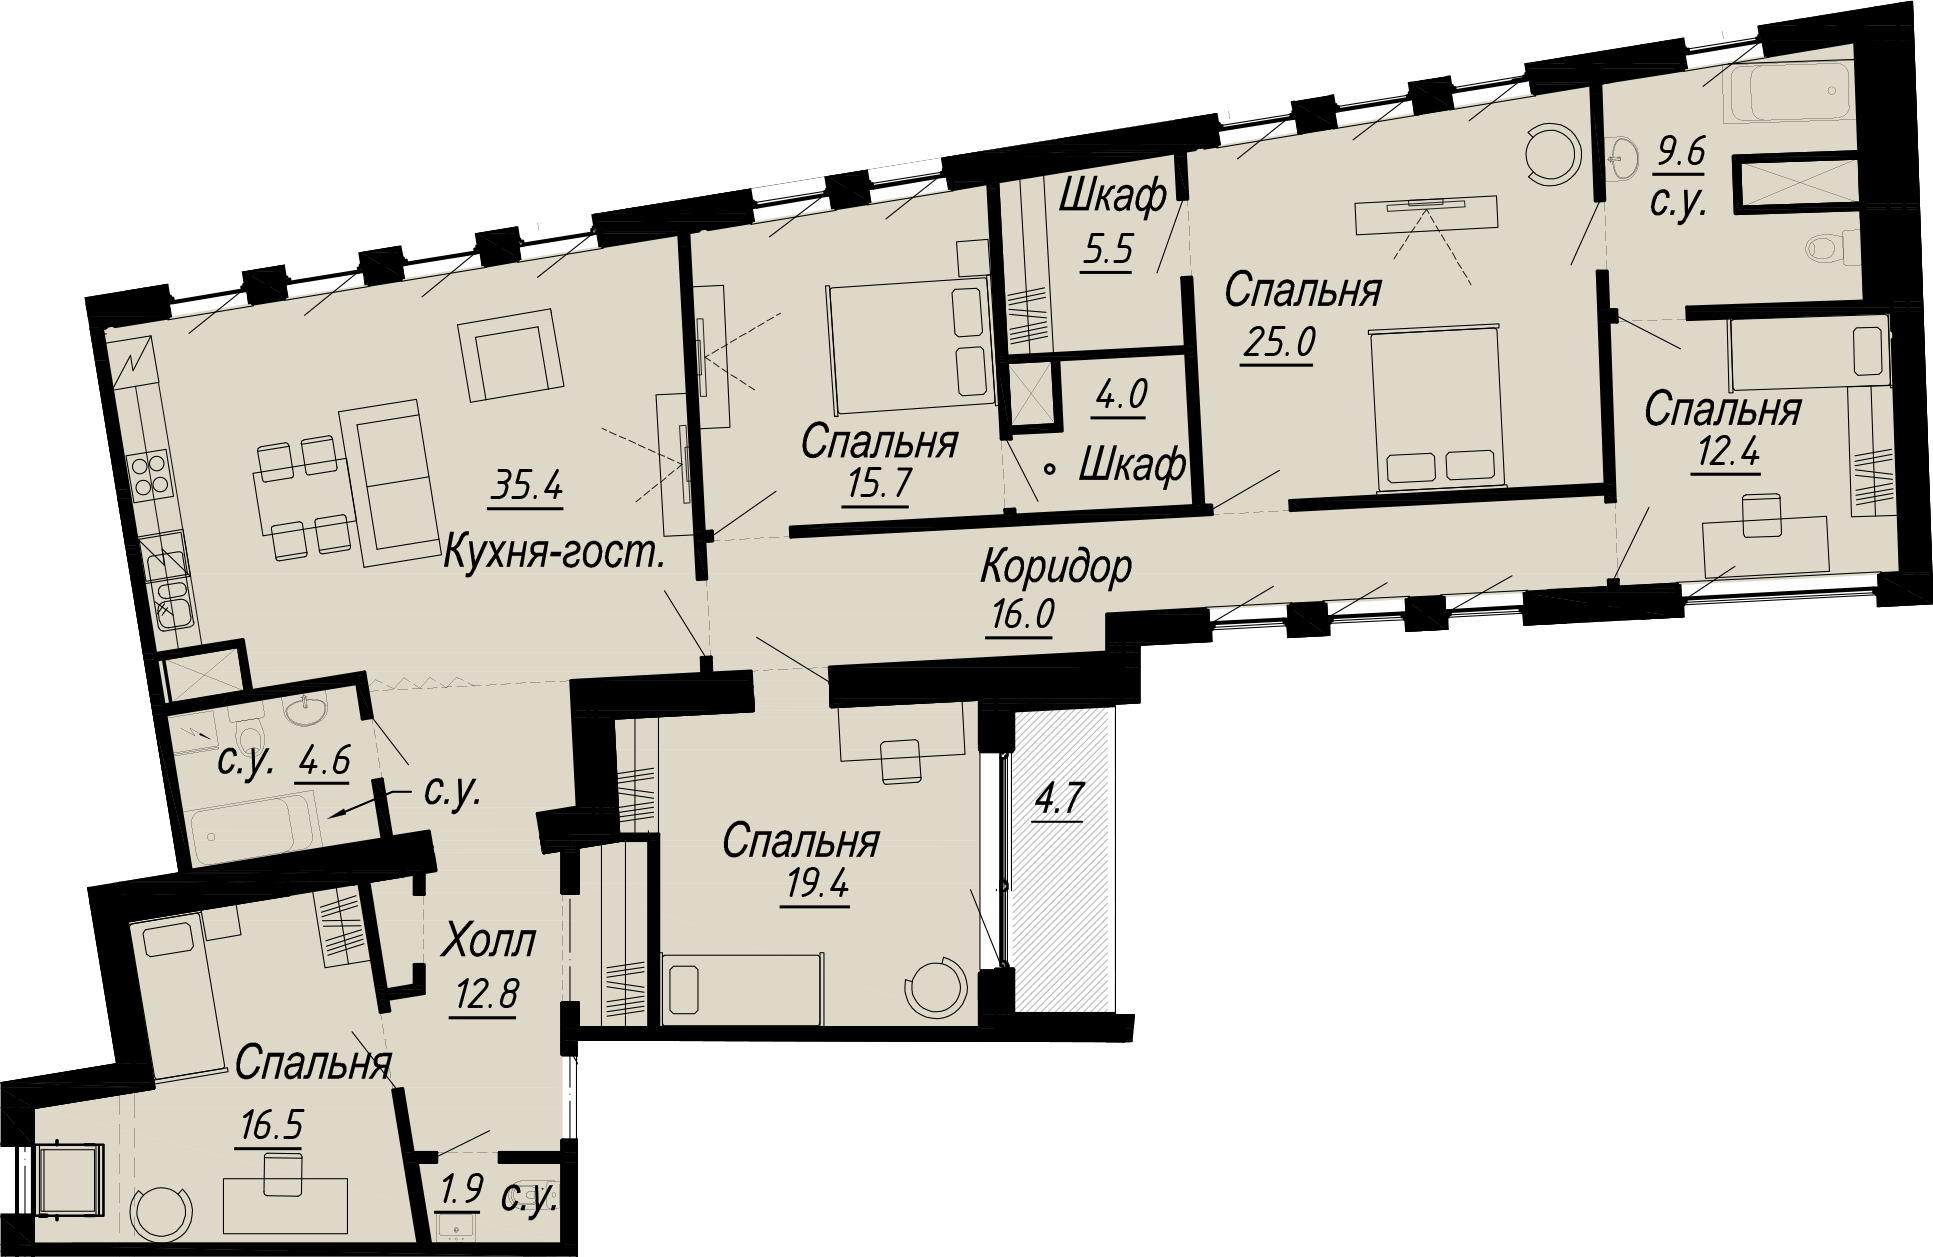 4-комнатная квартира  №17-7 в Meltzer Hall: 183.49 м², этаж 7 - купить в Санкт-Петербурге